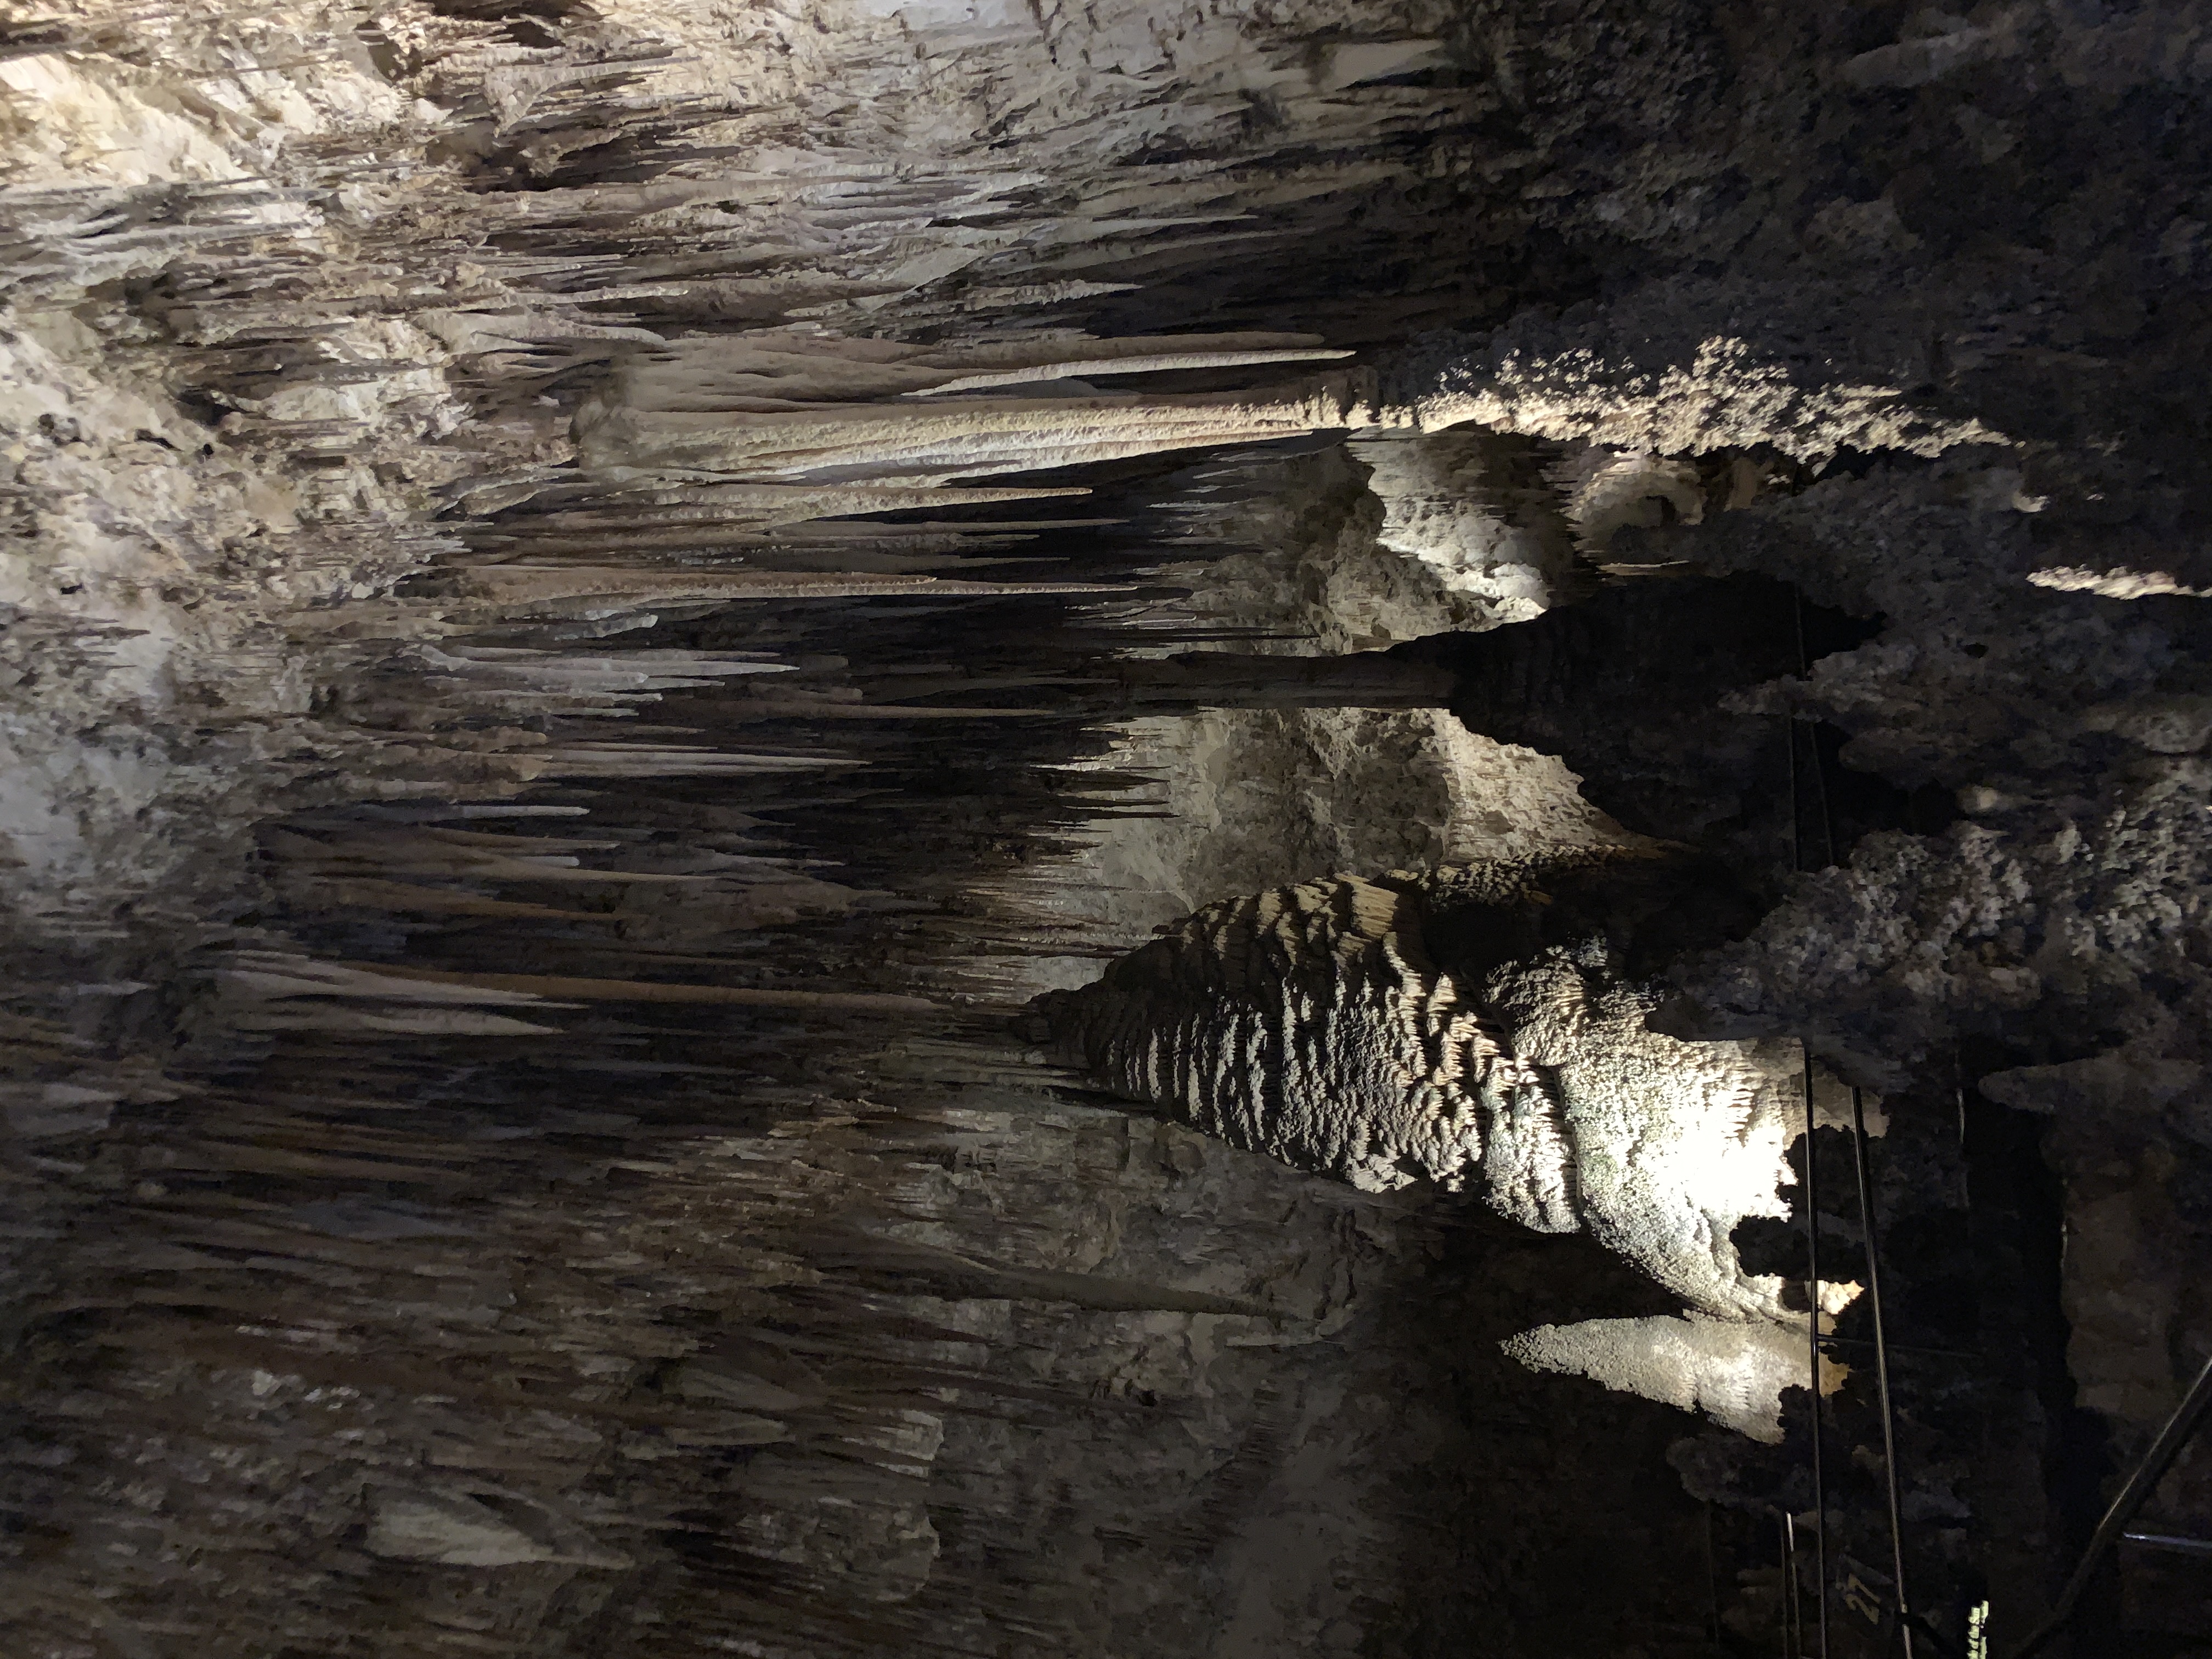 Stalactites and Stalagmites at Carlsbad Caverns National Park